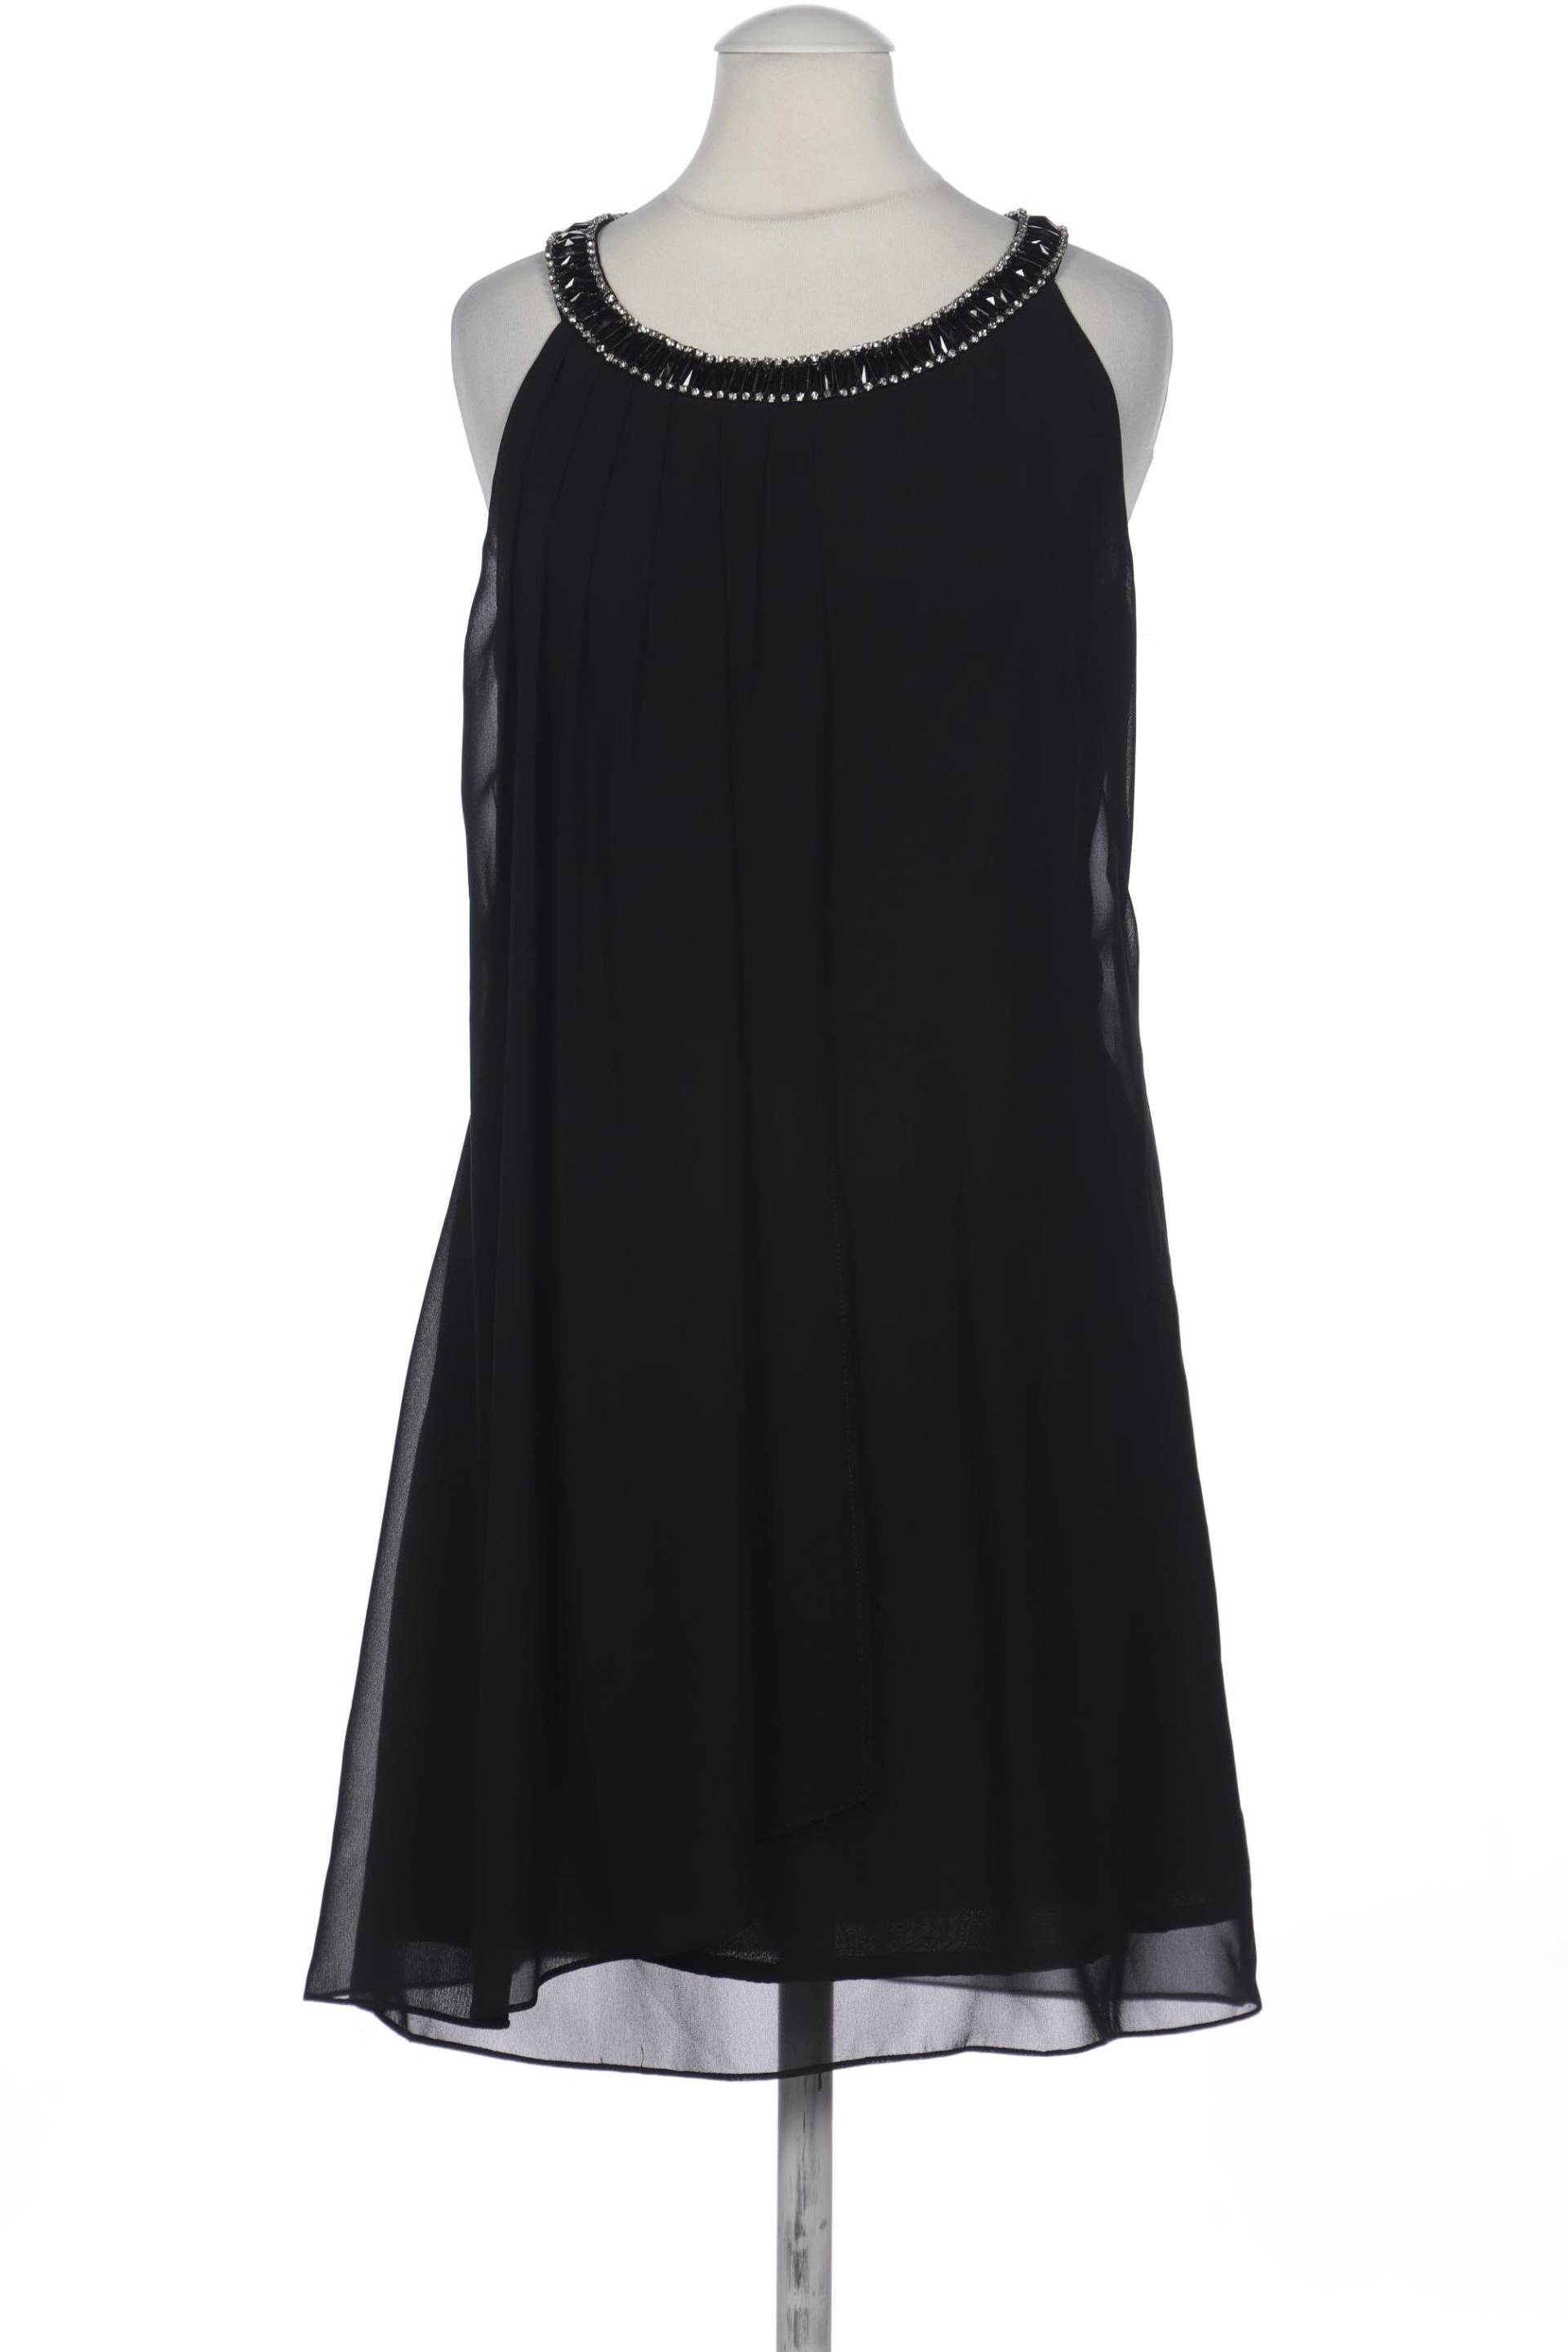 APANAGE Damen Kleid, schwarz von APANAGE